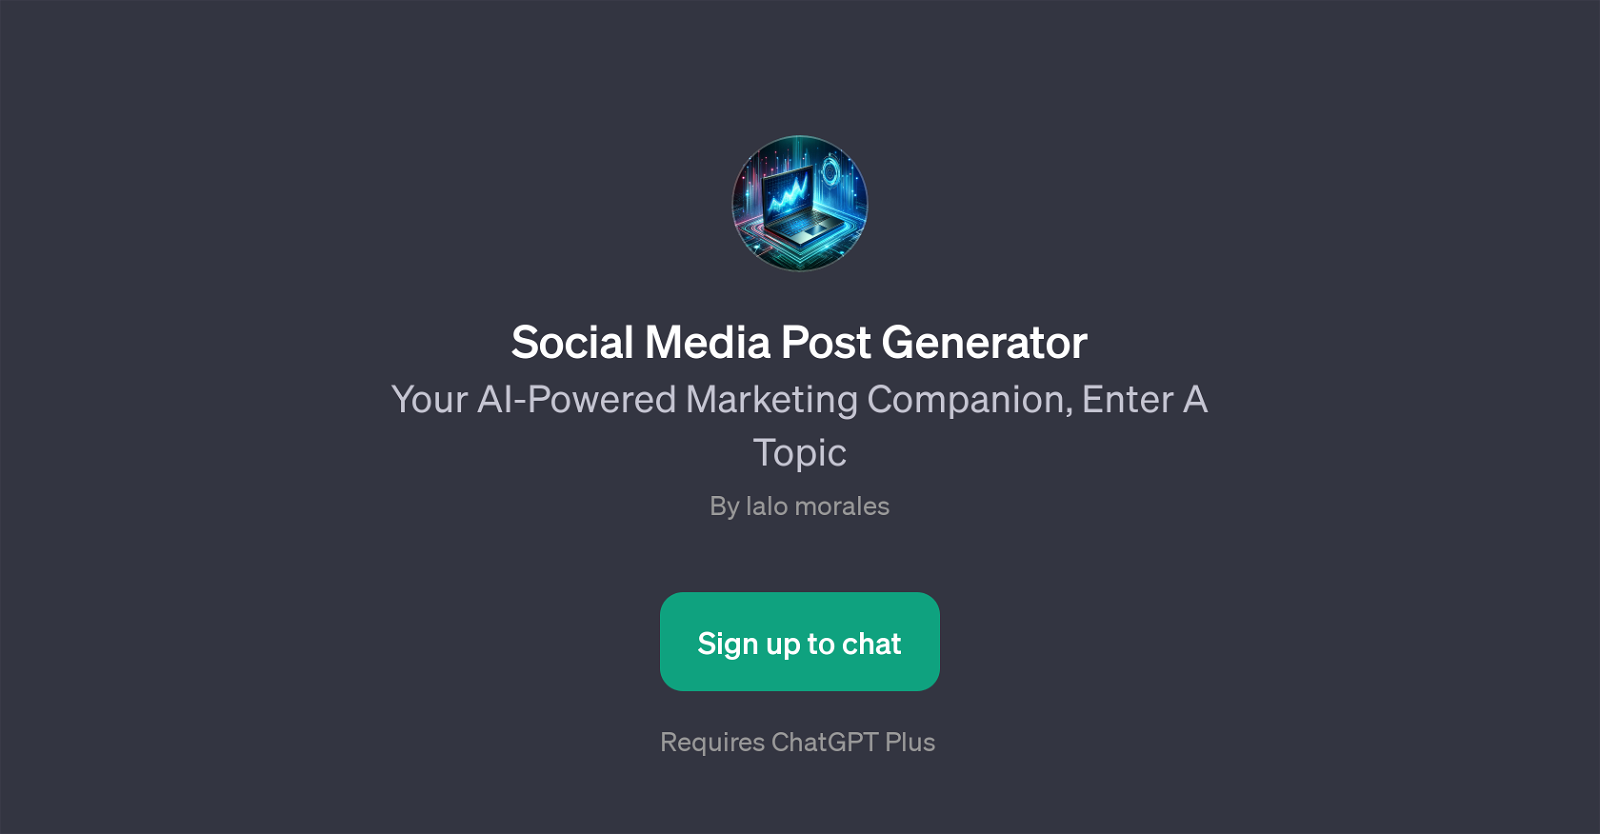 Social Media Post Generator website